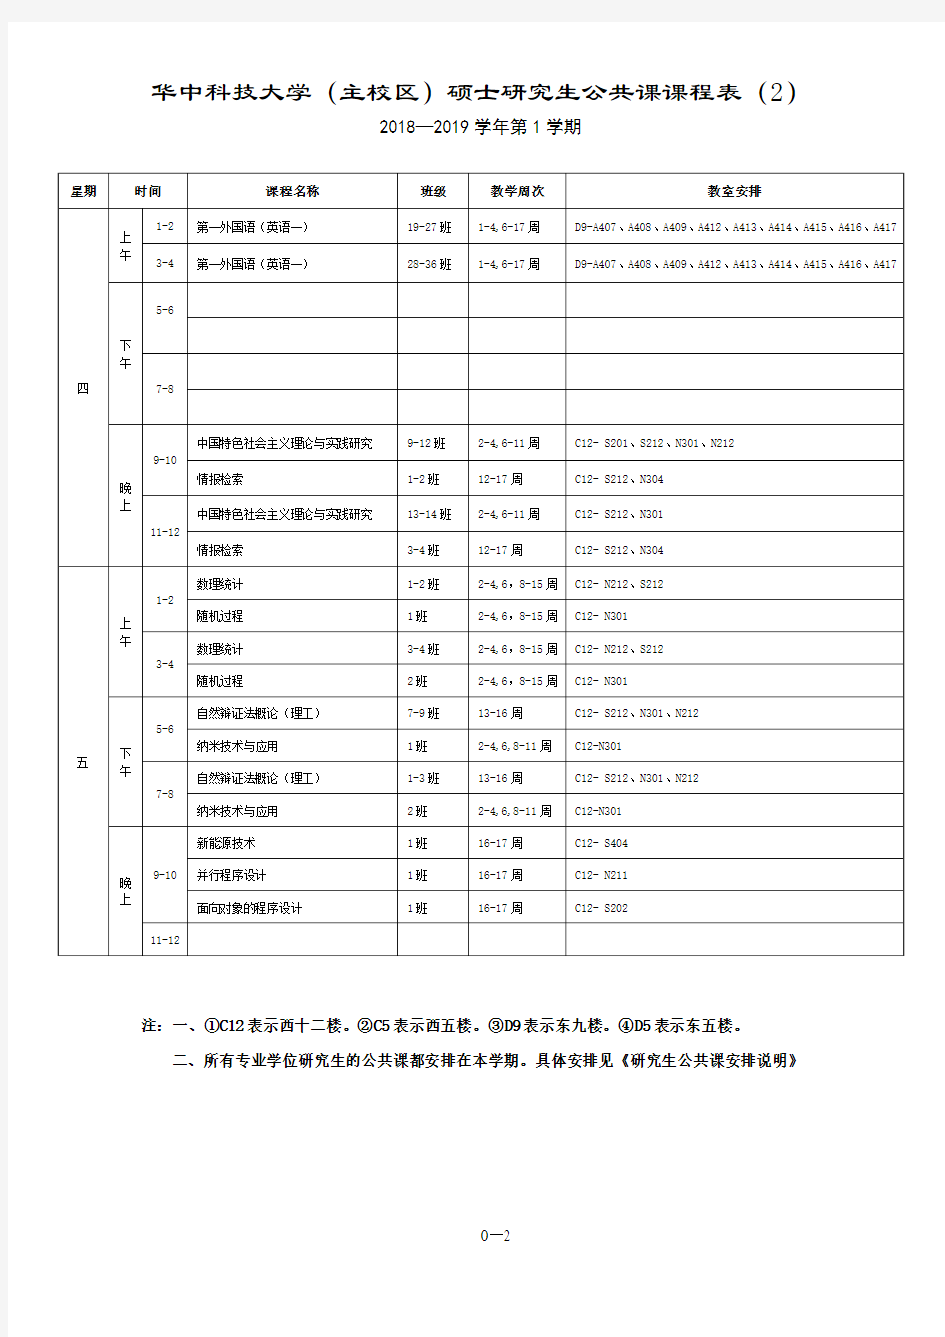 华中科技大学主校区硕士研究生公共课课程表